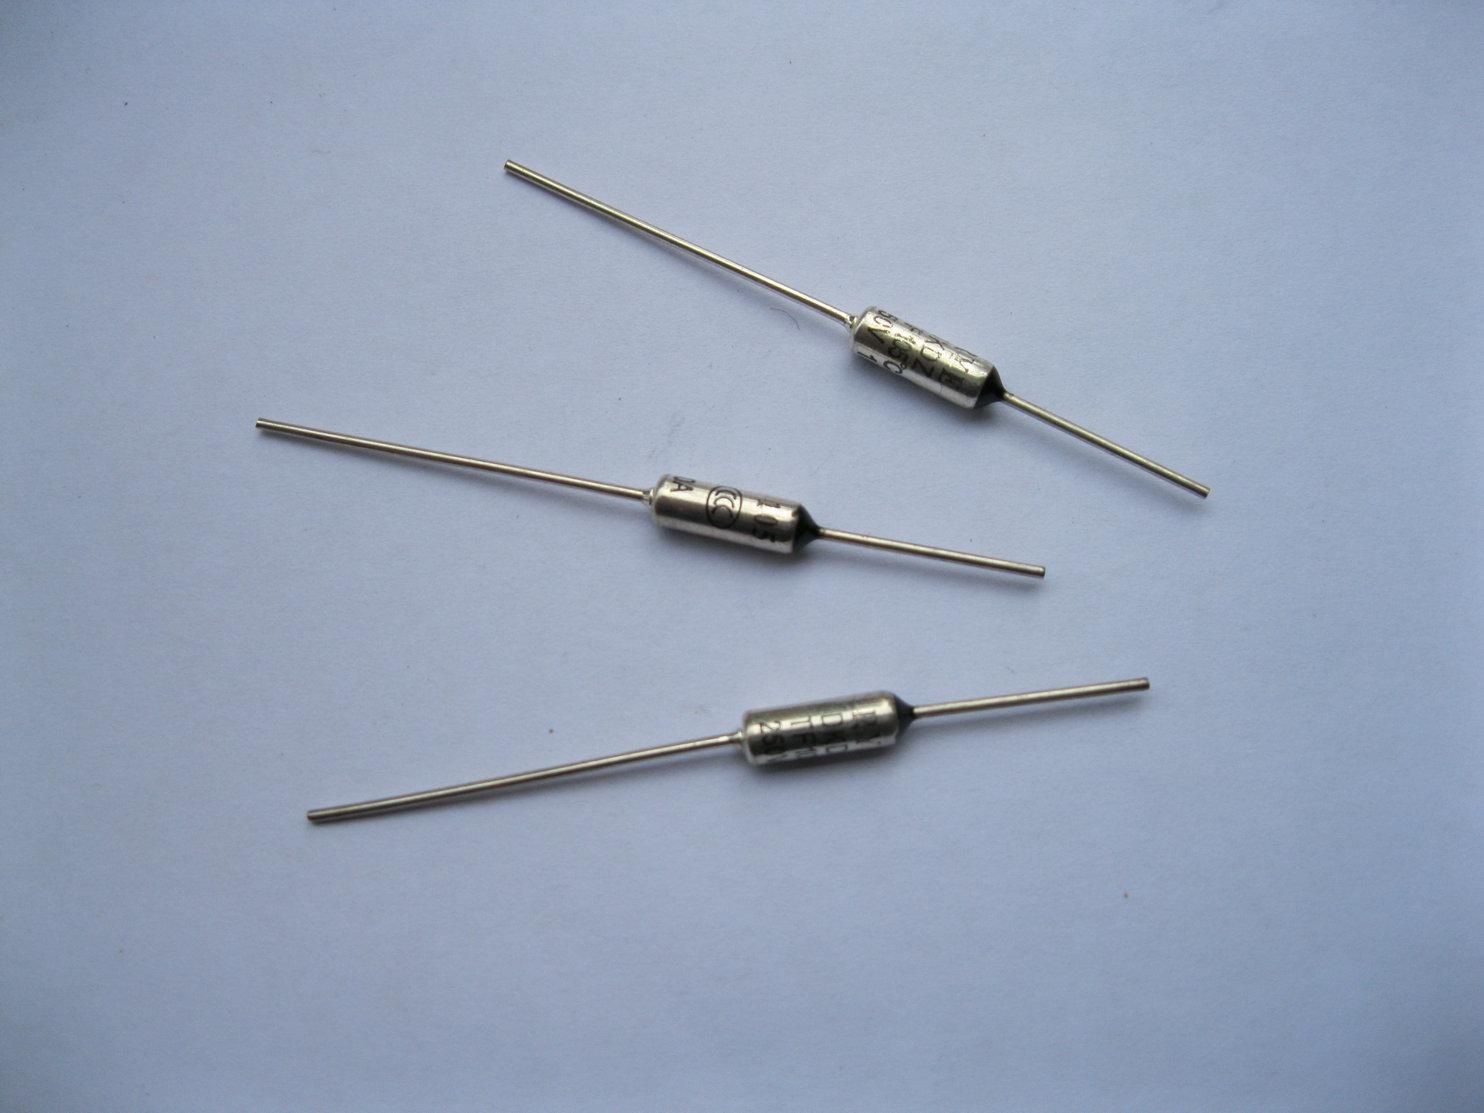 Microtemp Thermal Fuse 73C 94C 99C 101C 113C Cut-off 10A 250V 10 Pcs Per Lot